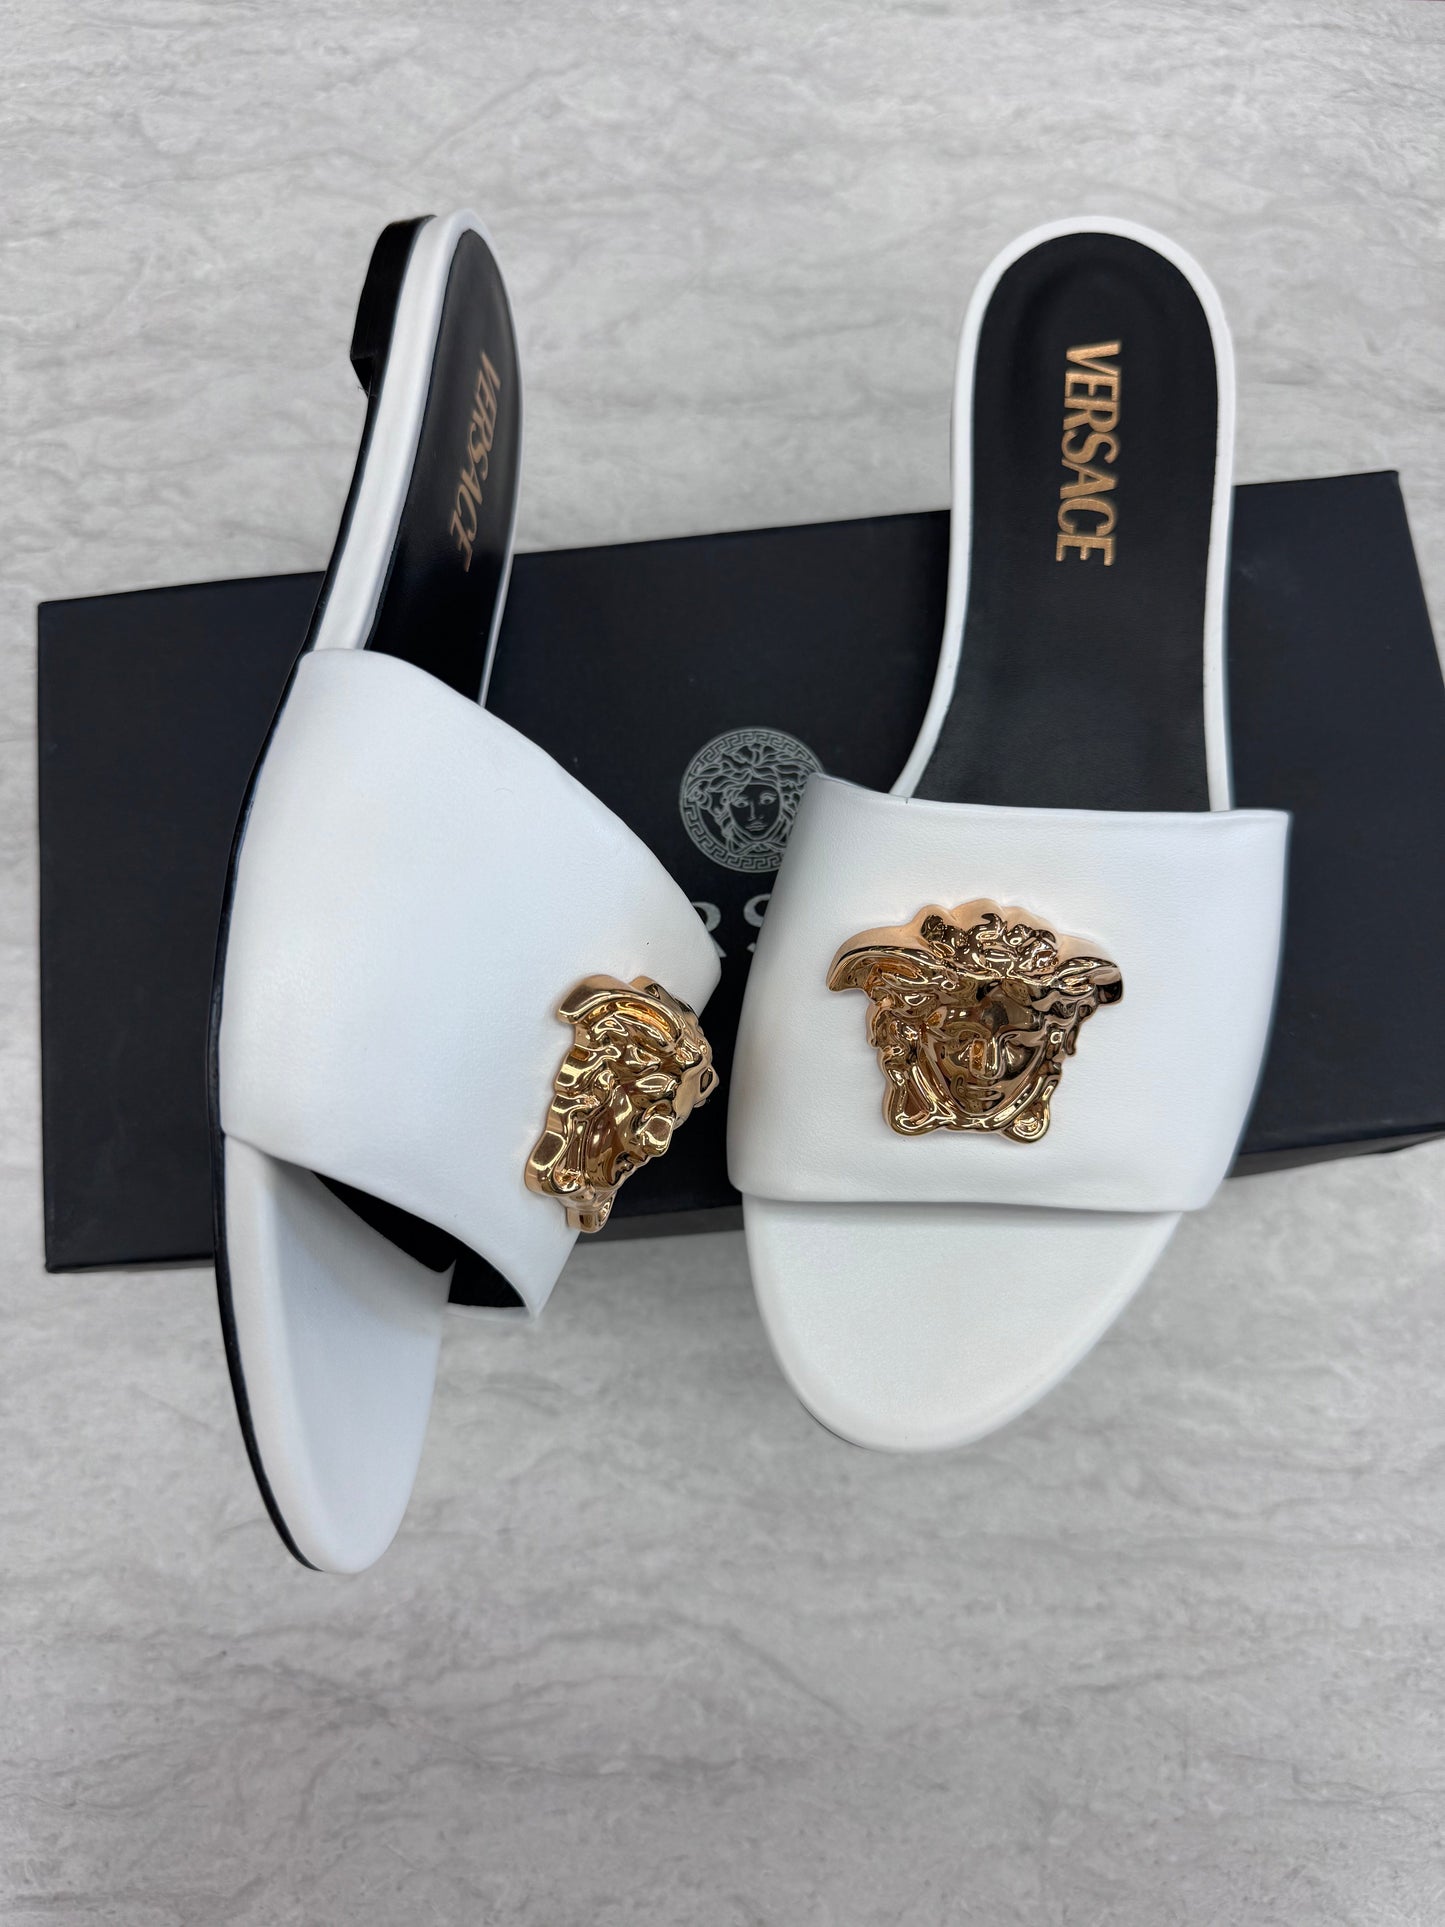 Sandals Luxury Designer By Versace  Size: 8